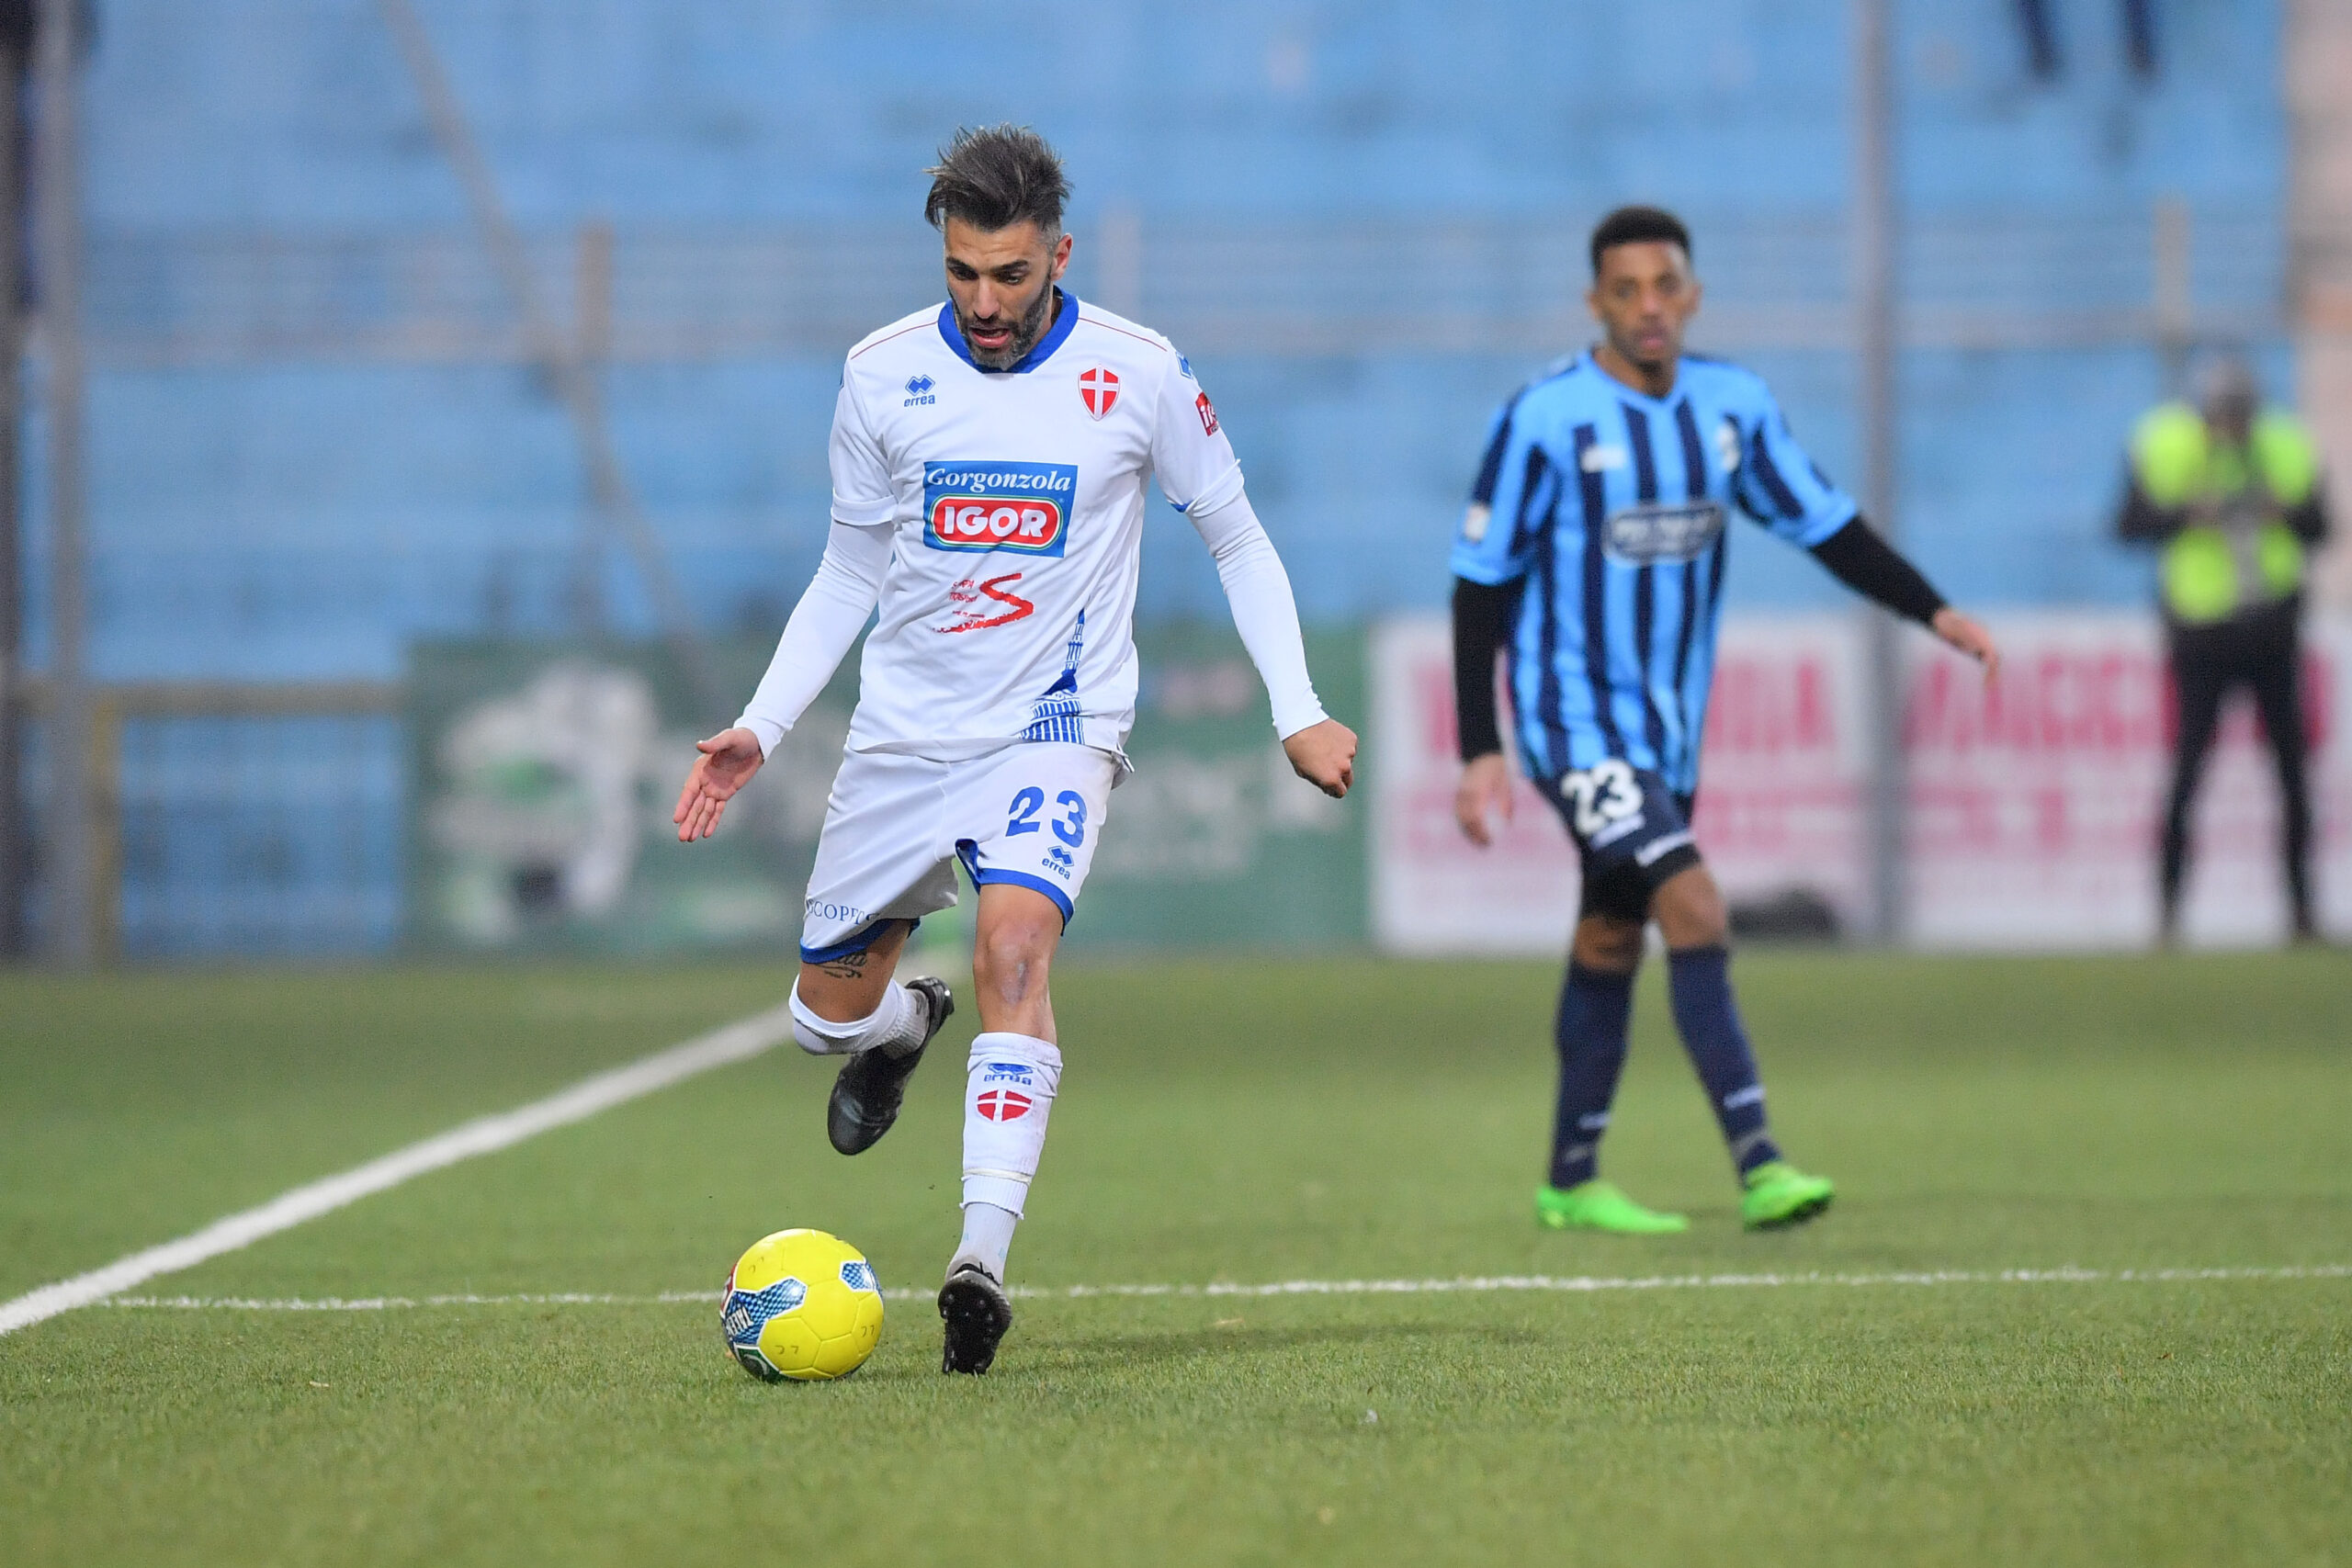 Read more about the article Lecco-Novara 3-1 | Il tabellino del match